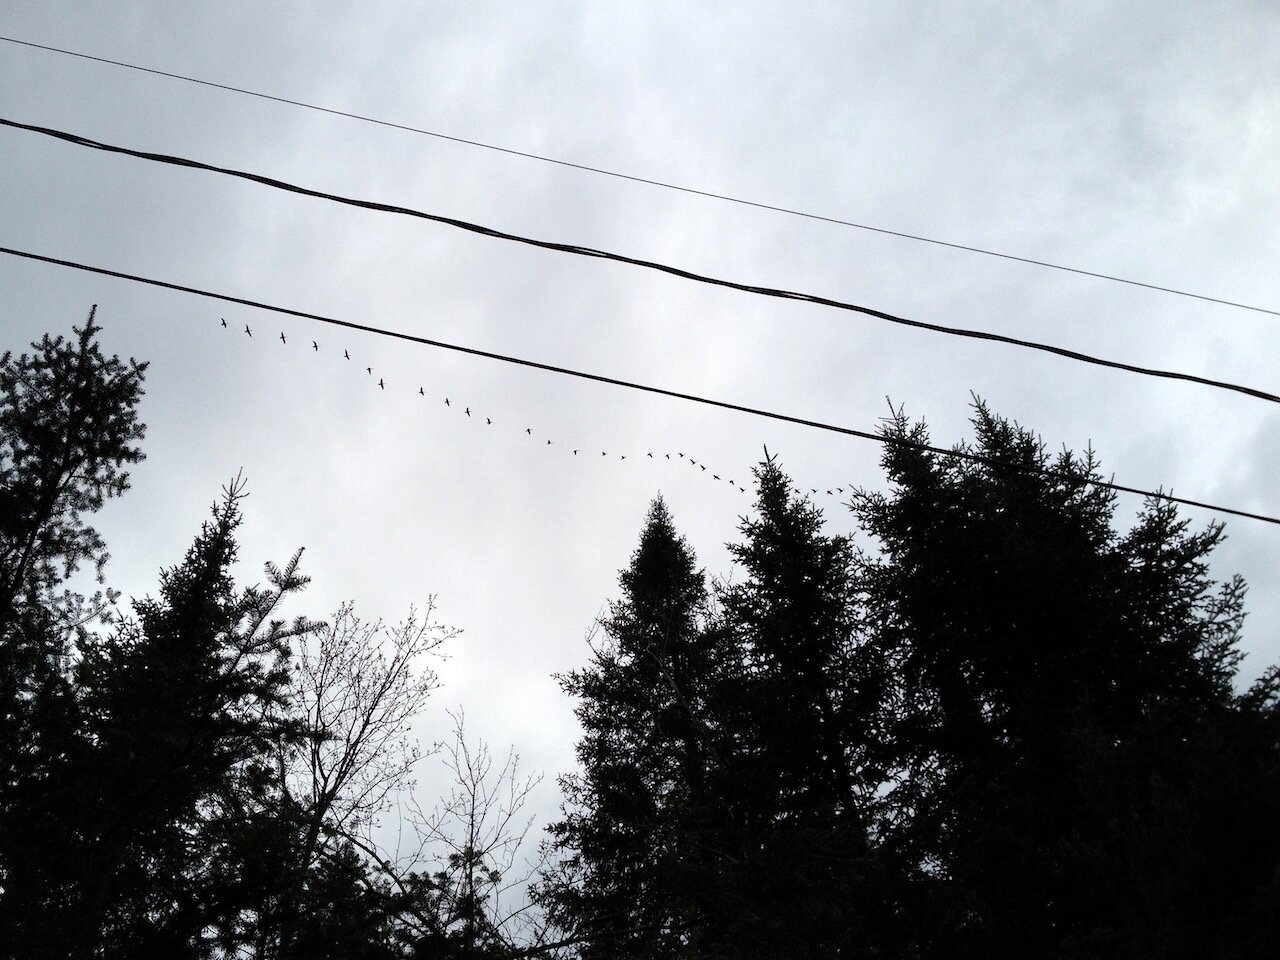 Birds in a line - 1.jpeg